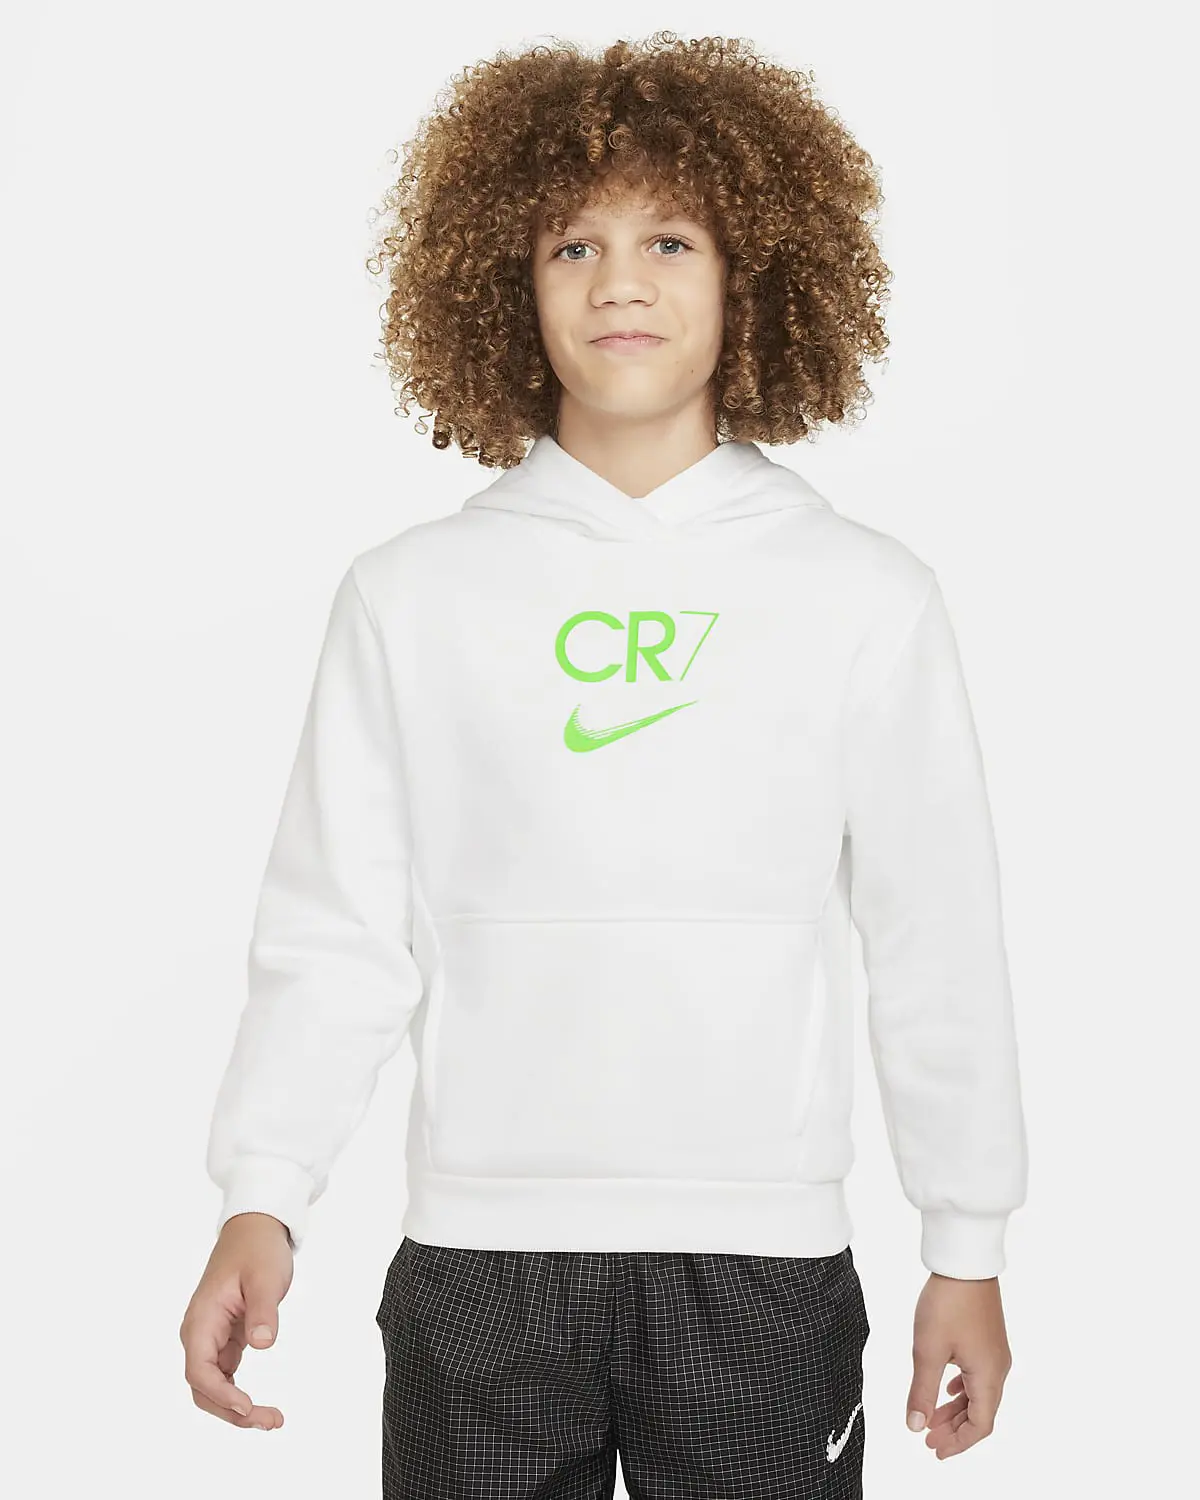 Nike CR7. 1